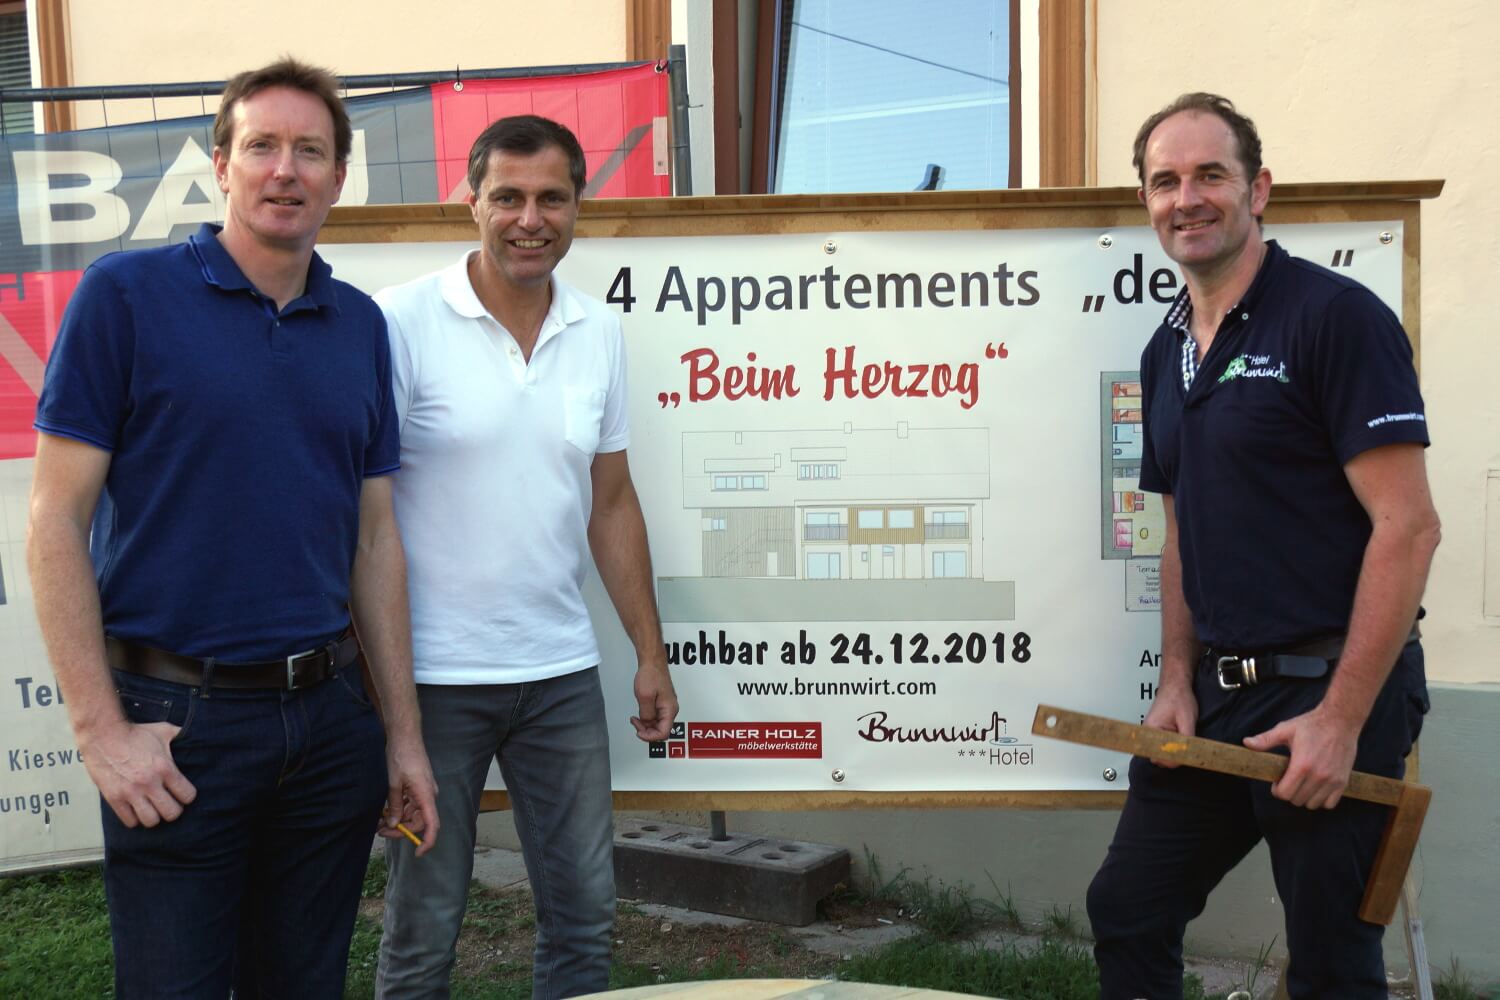 Hotel Brunnwirt - News - Herzog Haus